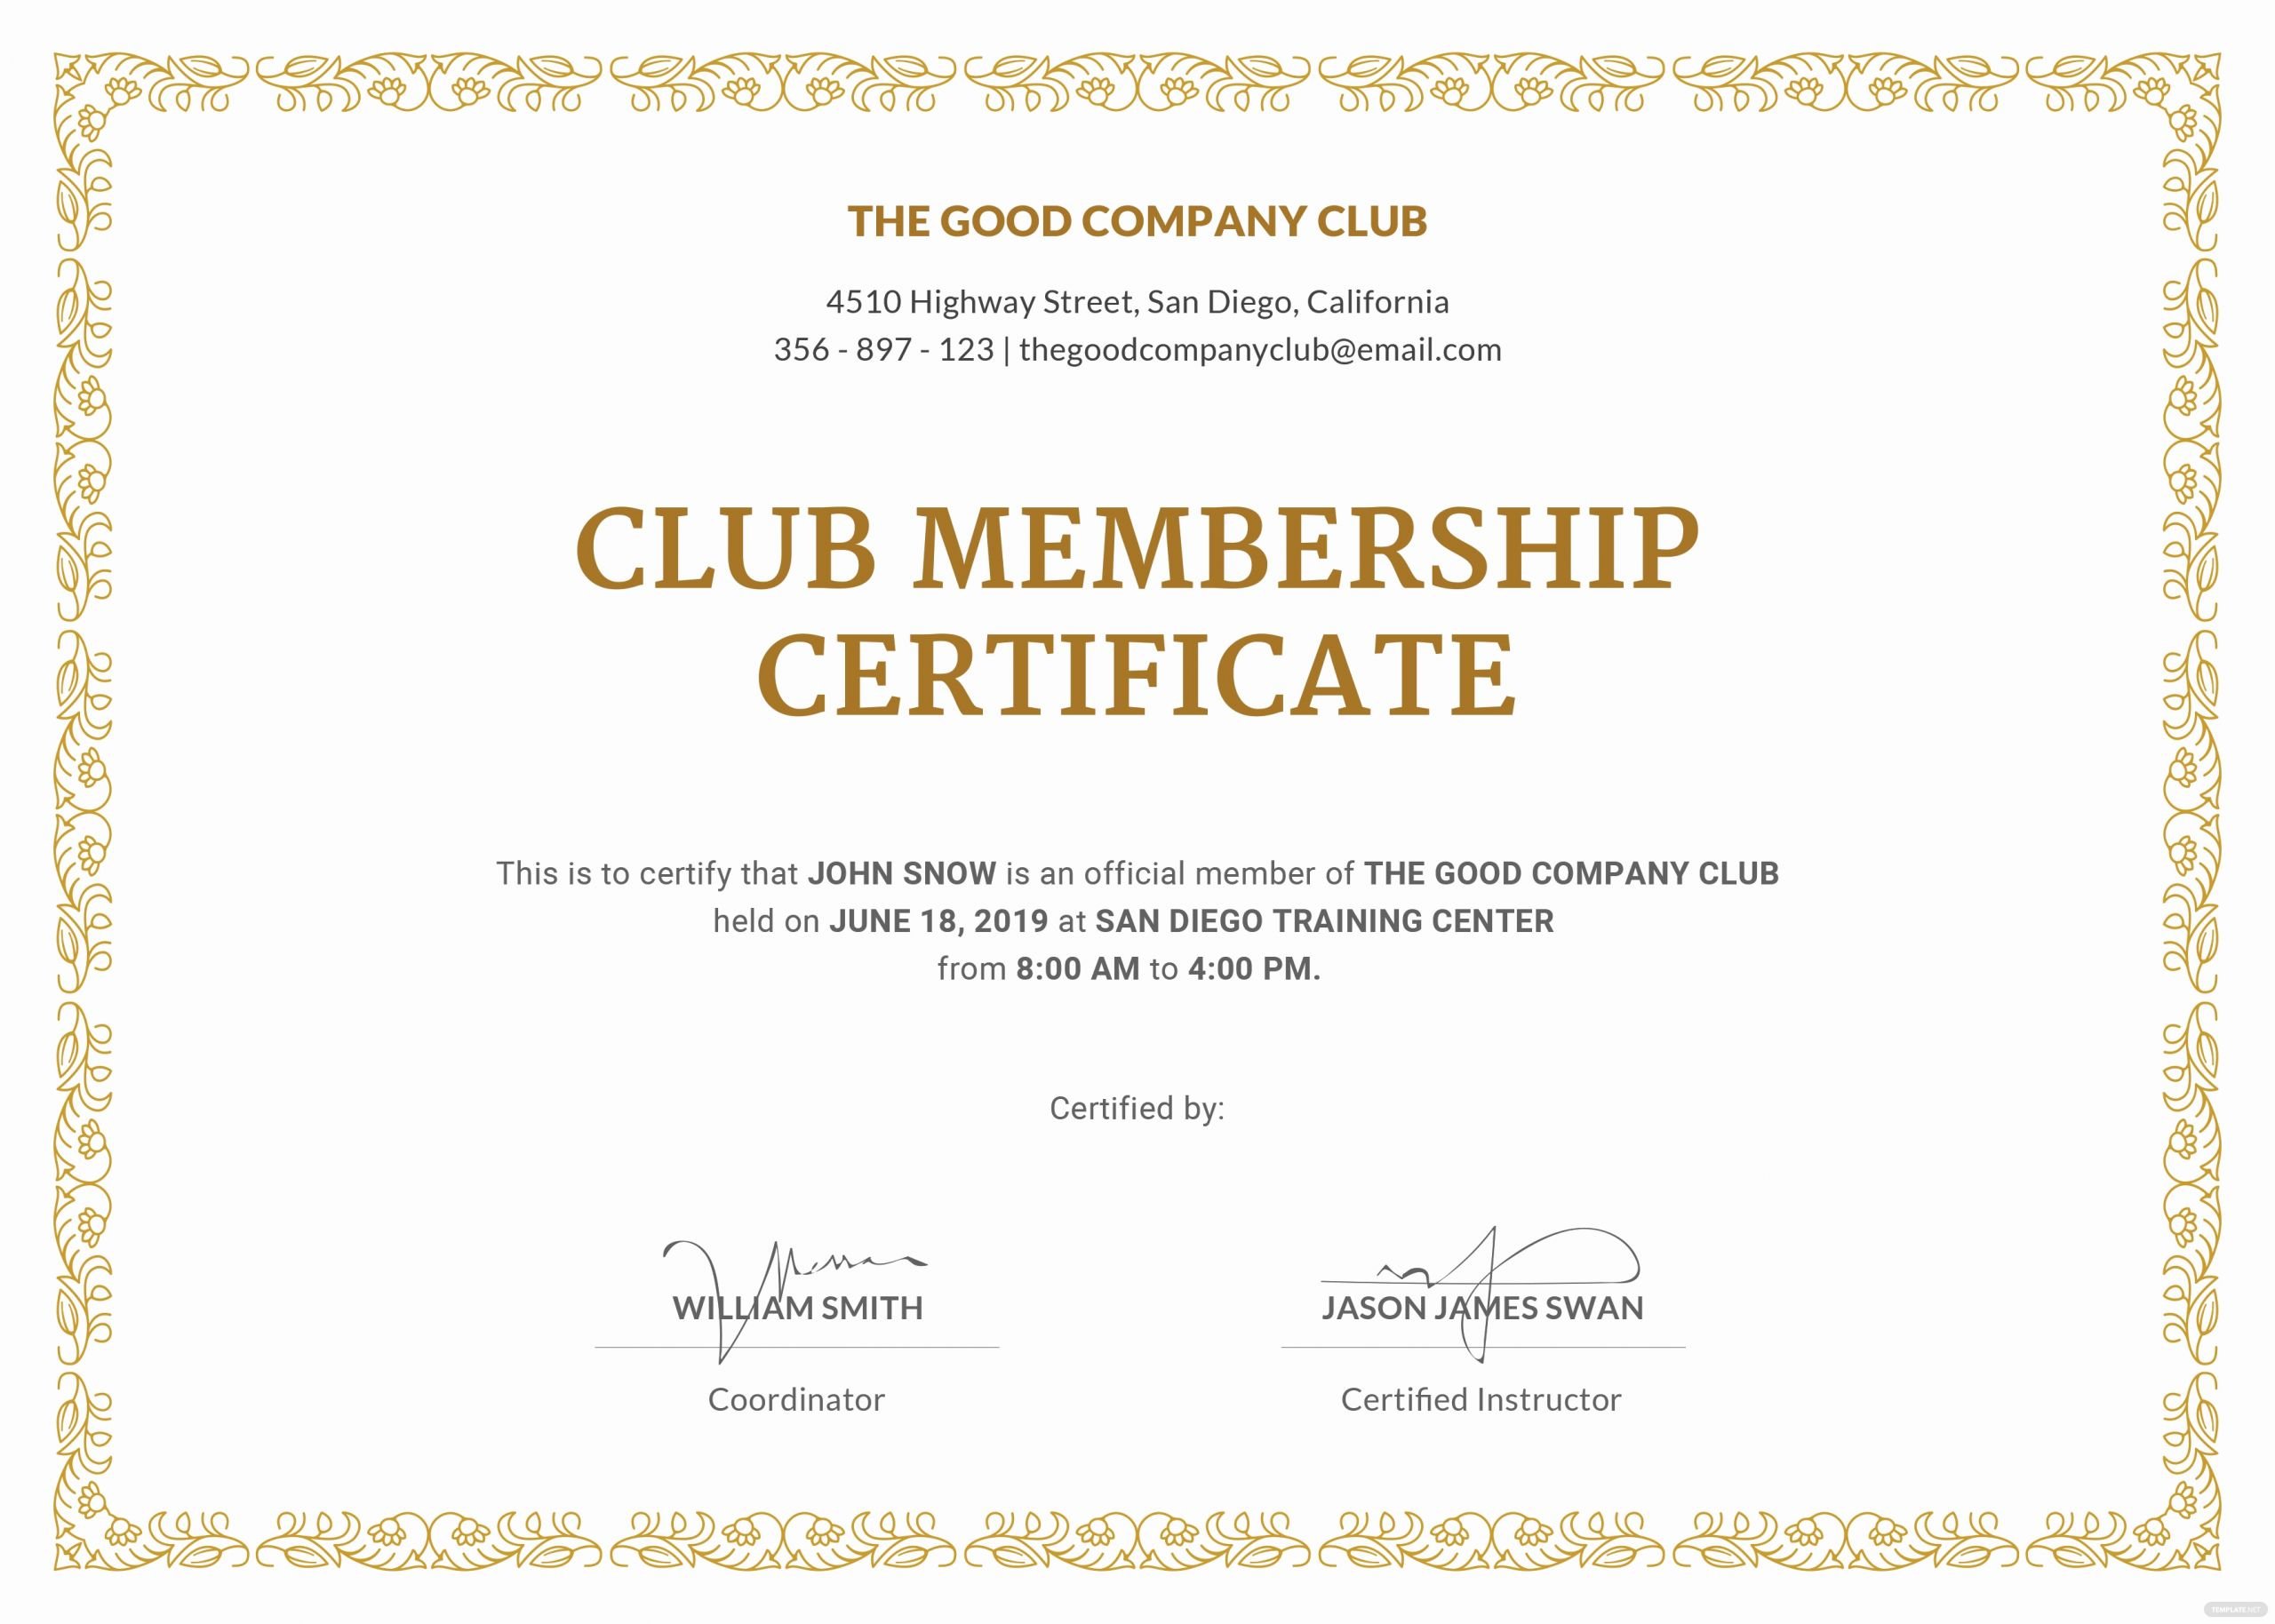 Honorary Membership Certificate Template Luxury Free Club Membership Certificate Template In Adobe